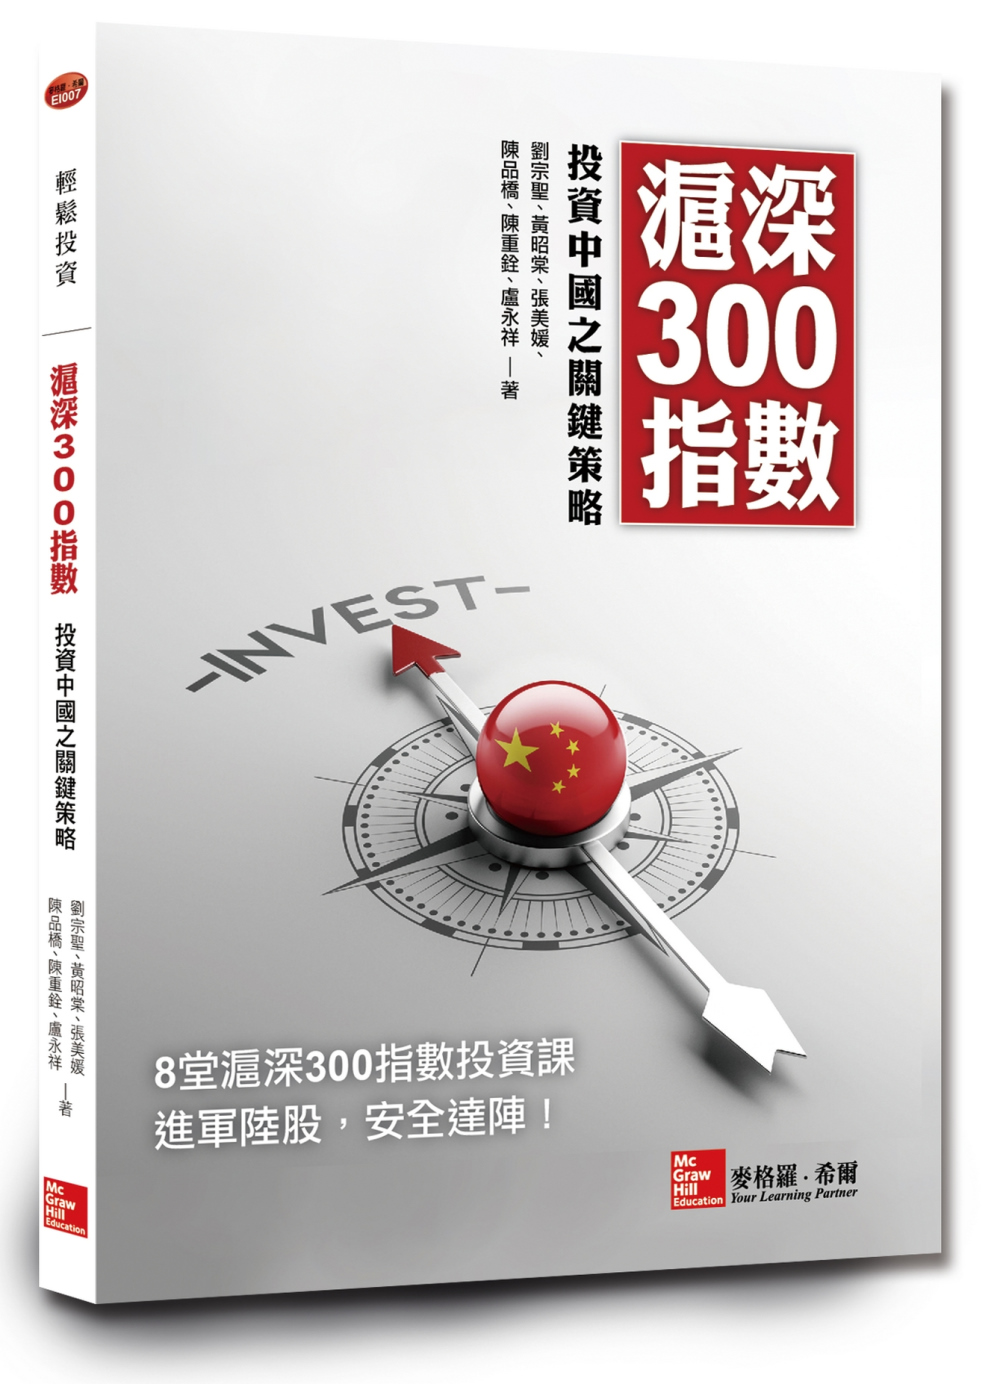 滬深300指數投資中國之關鍵策略